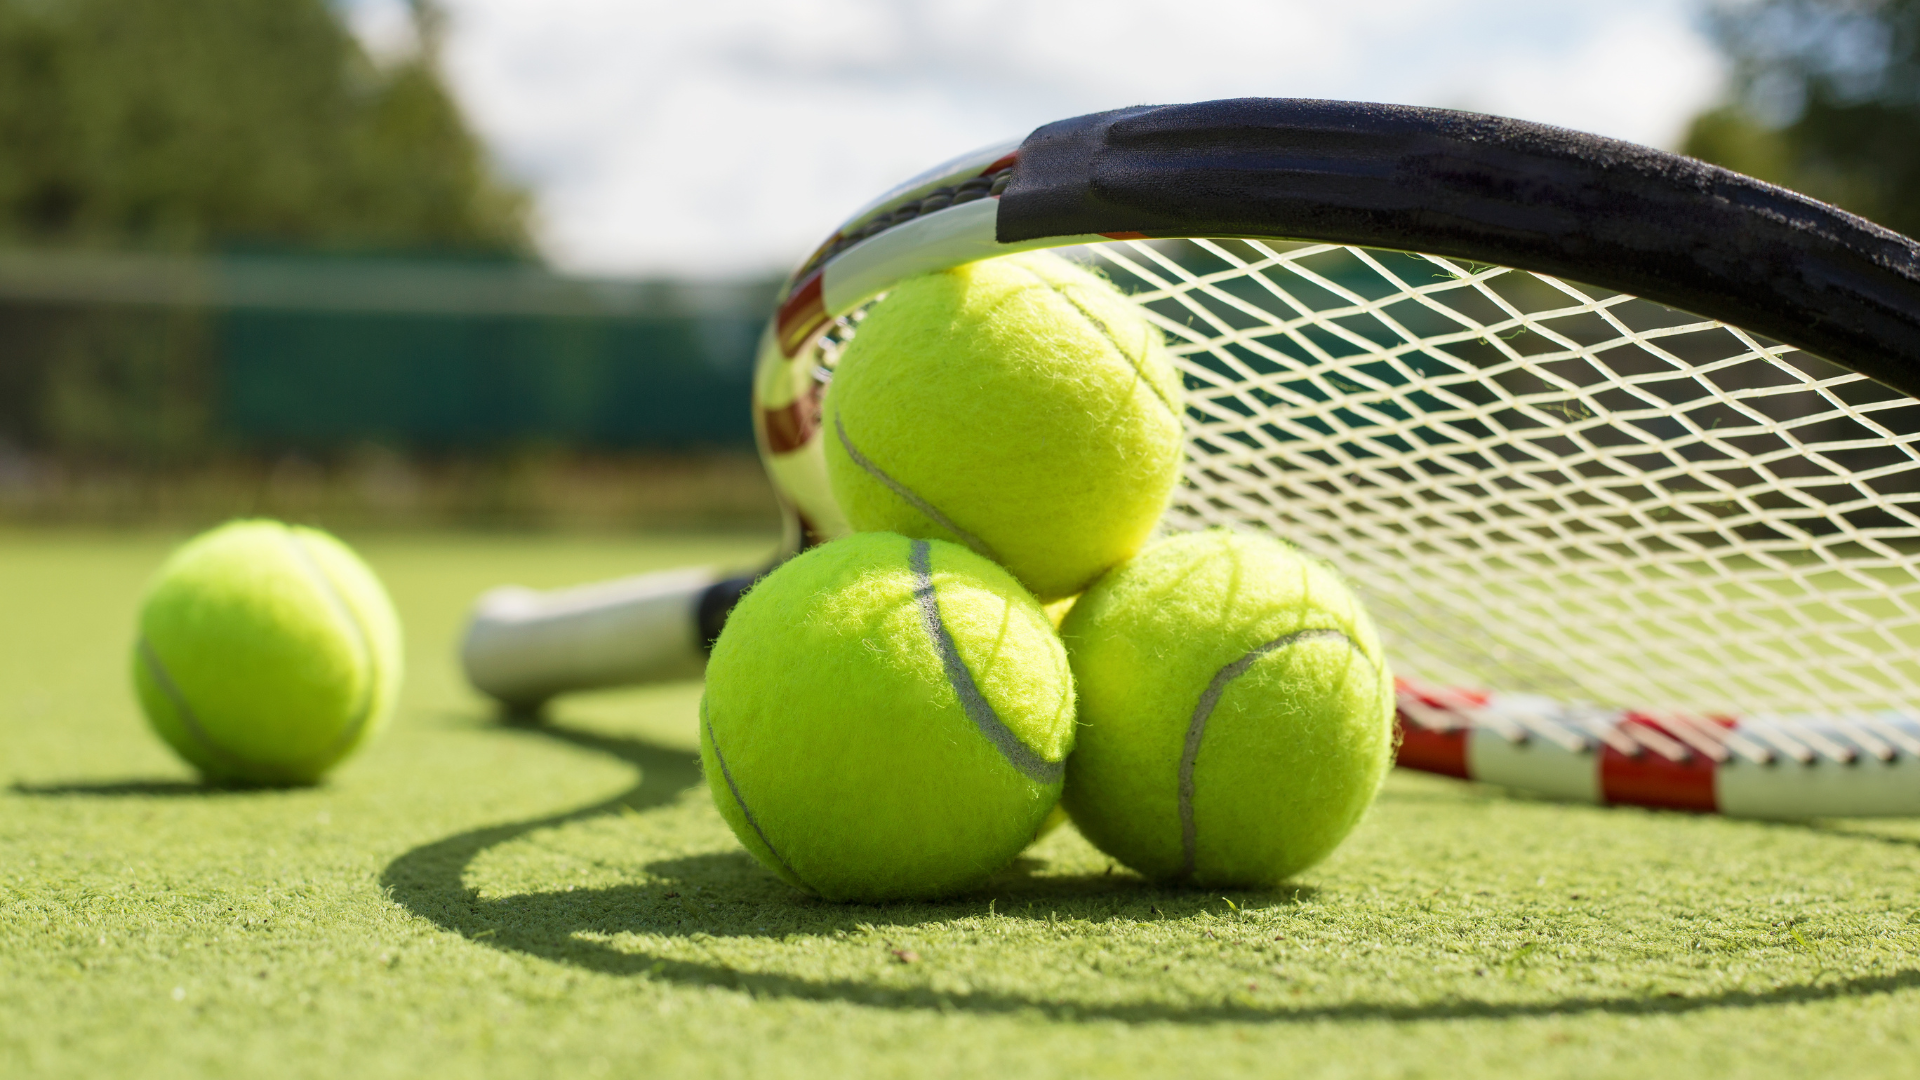 Tennis racket and balls on grass court